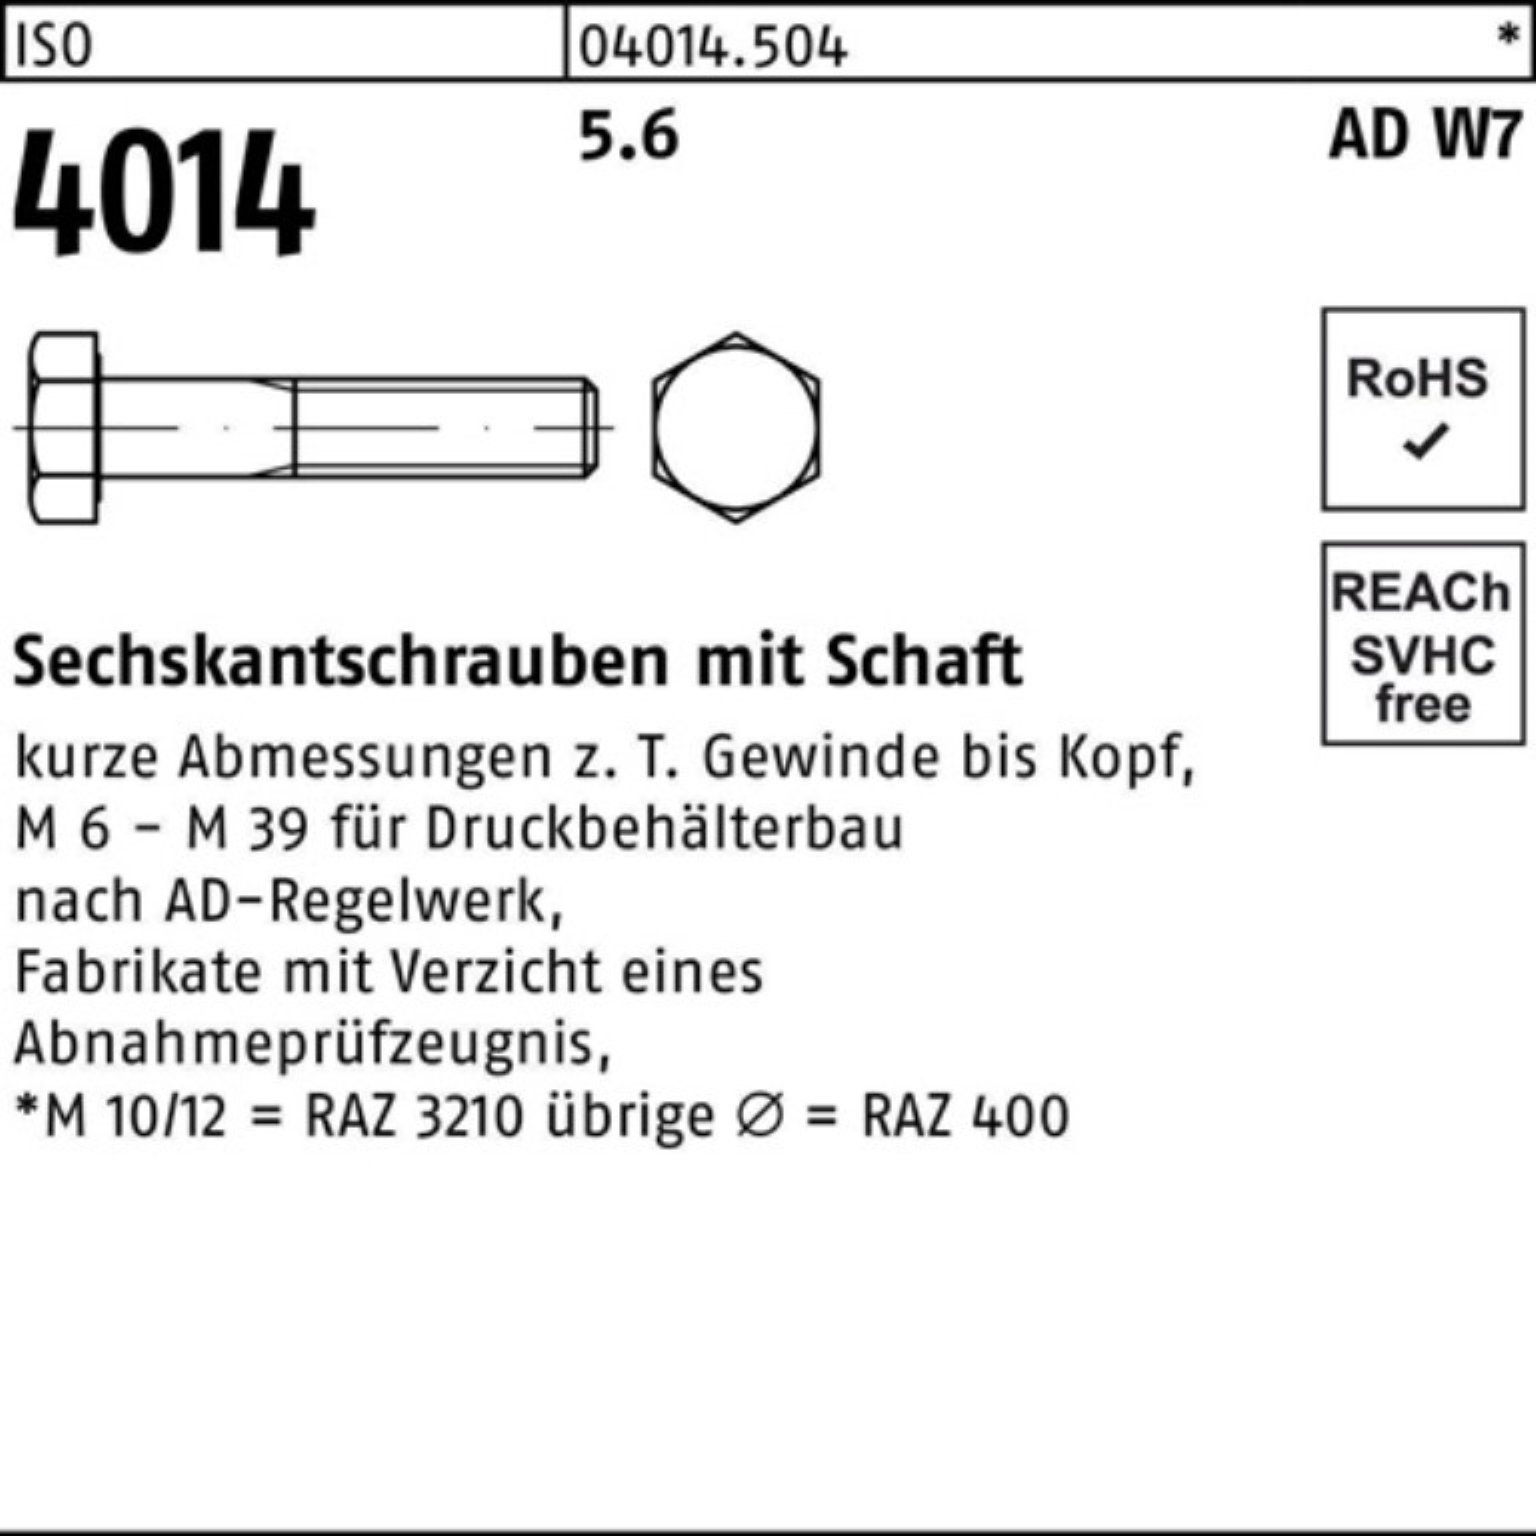 130 ISO Pack Sechskantschraube Stück 100er 4014 1 Bufab M27x 5.6 W7 Schaft Sechskantschraube